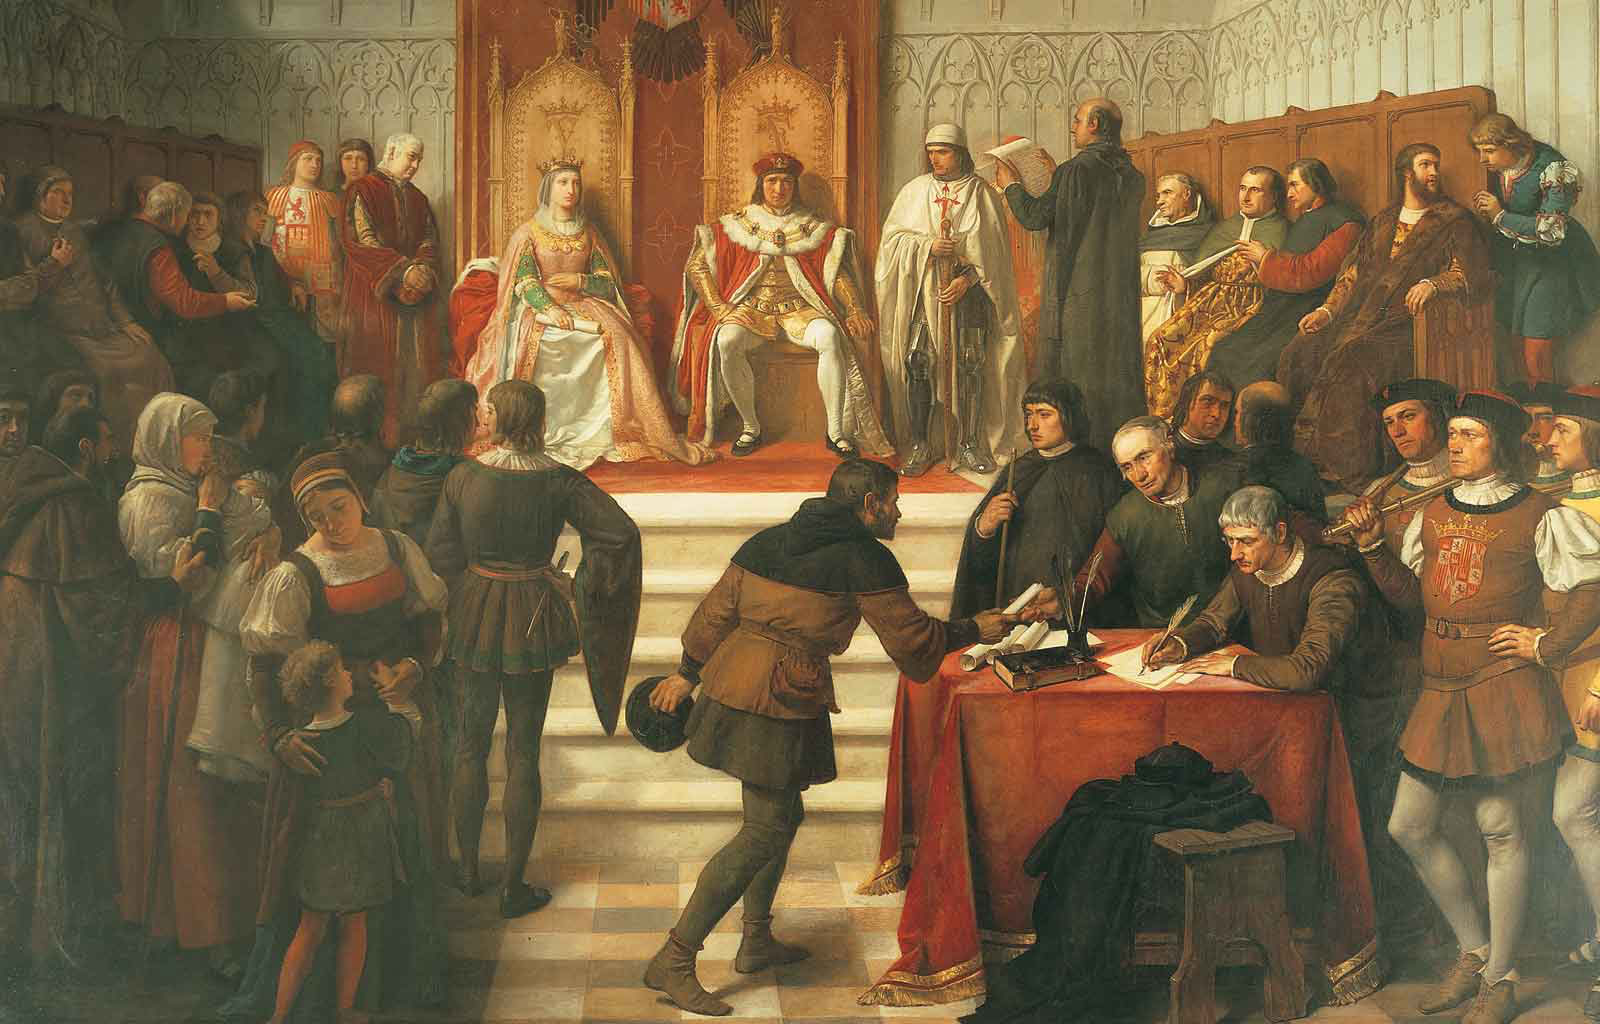 Los Reyes Católicos en el acto de administrar justicia, Víctor Manzano y Mejorada. entre 1831 y 1865.